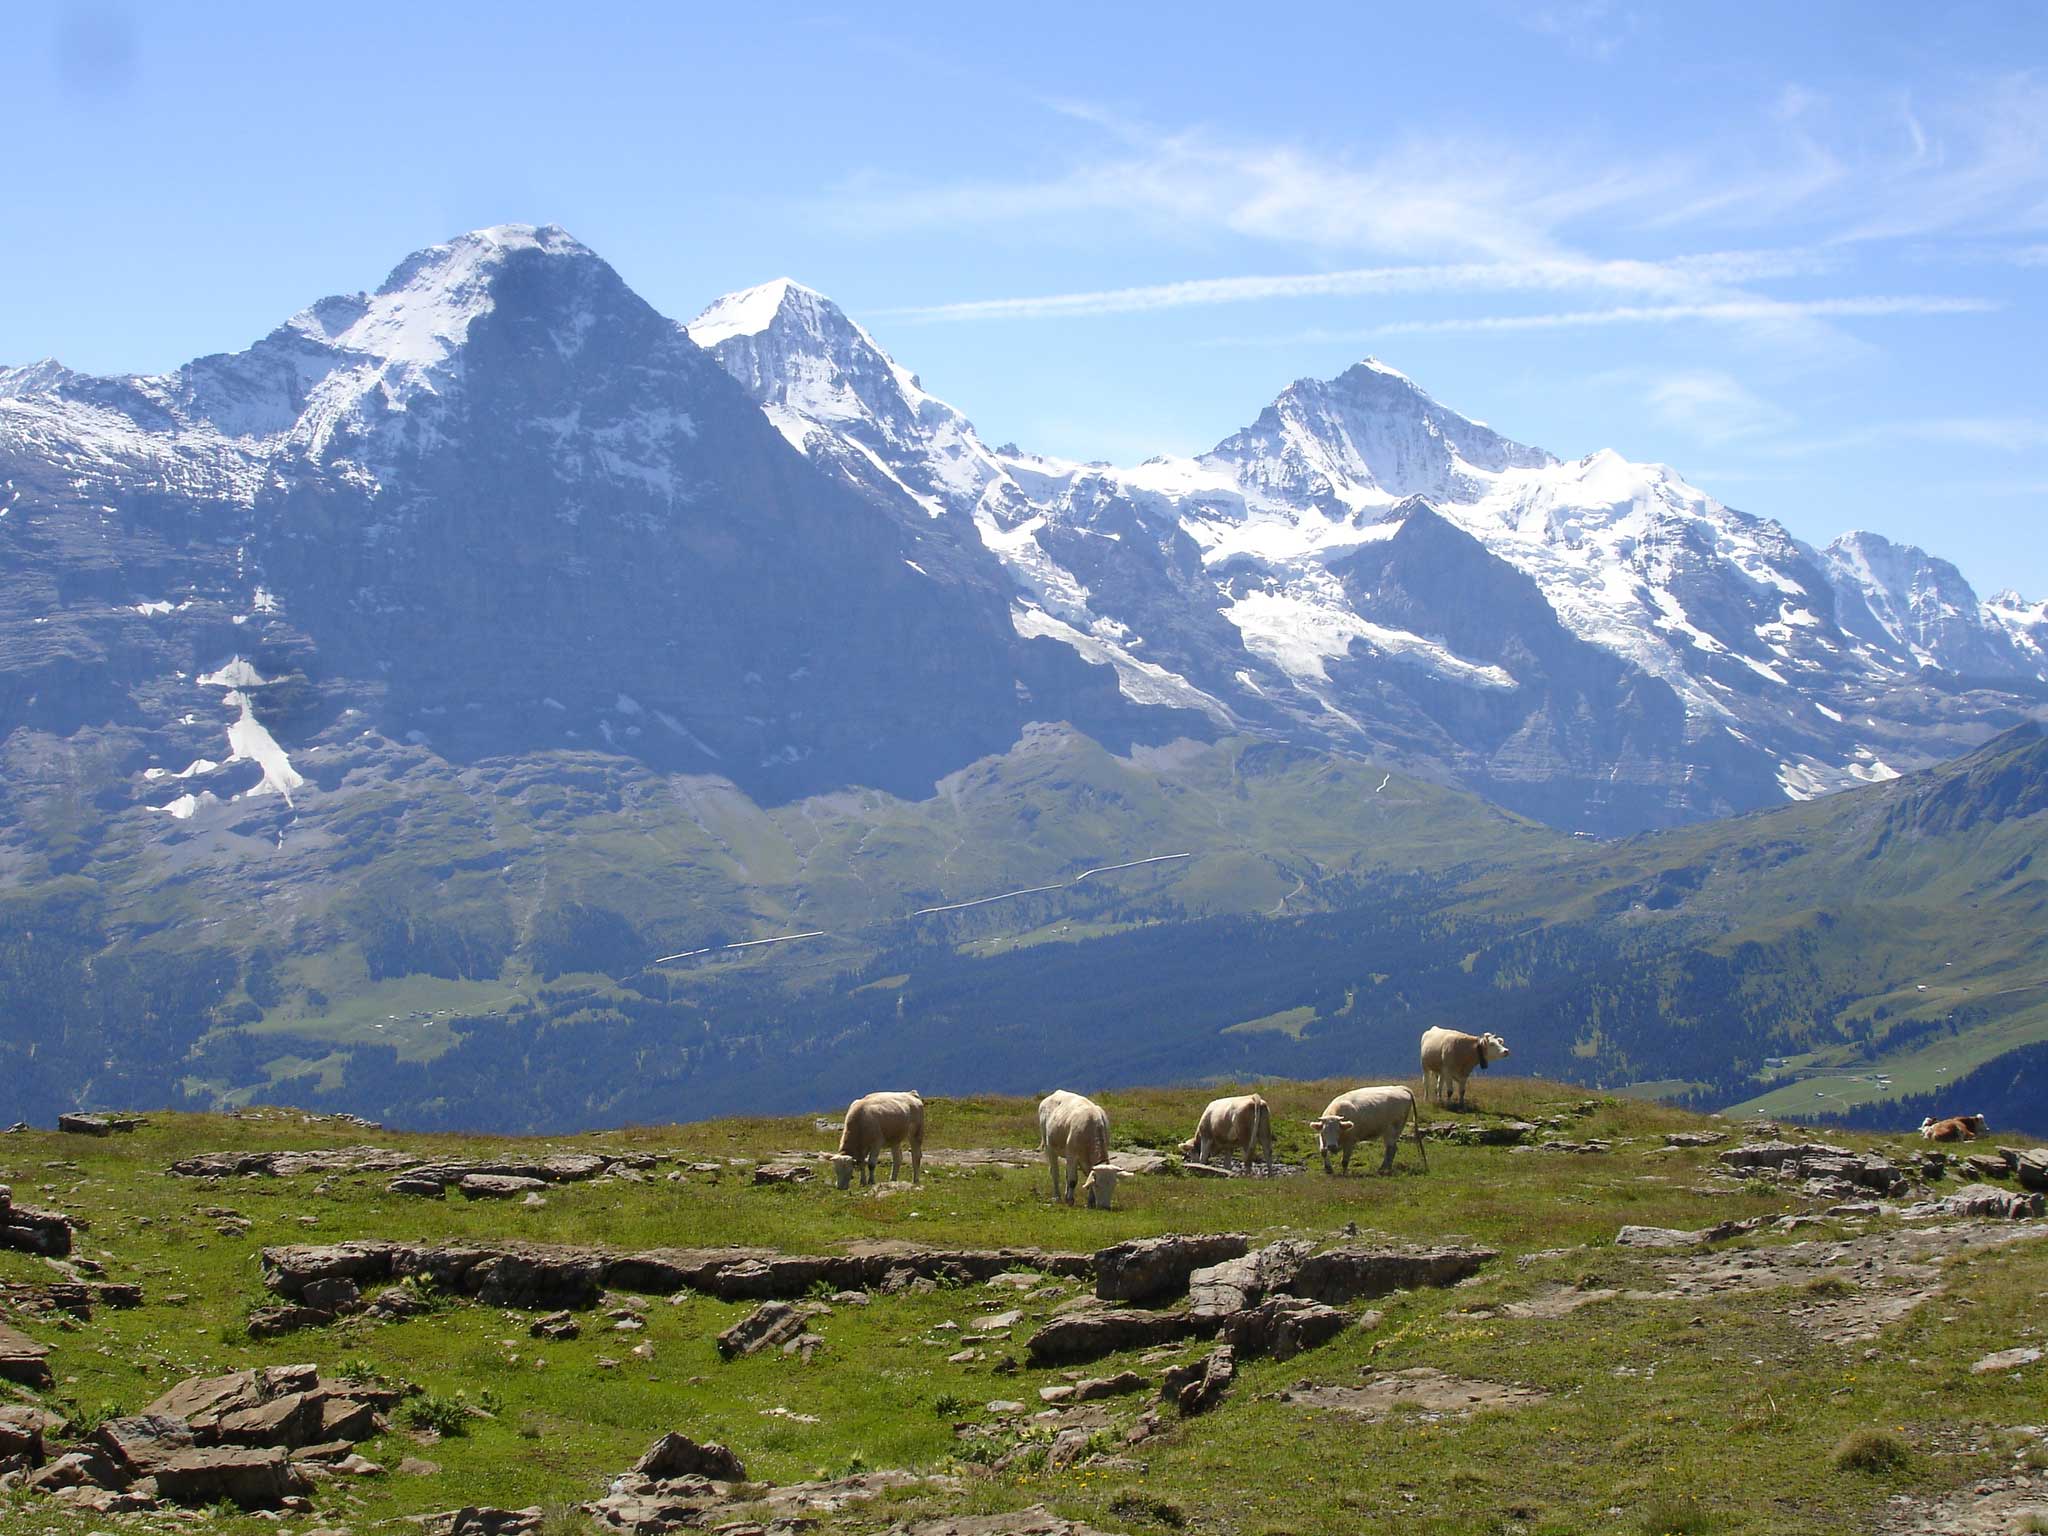 Alp Bussalp Im Hintergrund das weltberühmte Dreigestirn mit Eiger, Mönch und Jungfrau